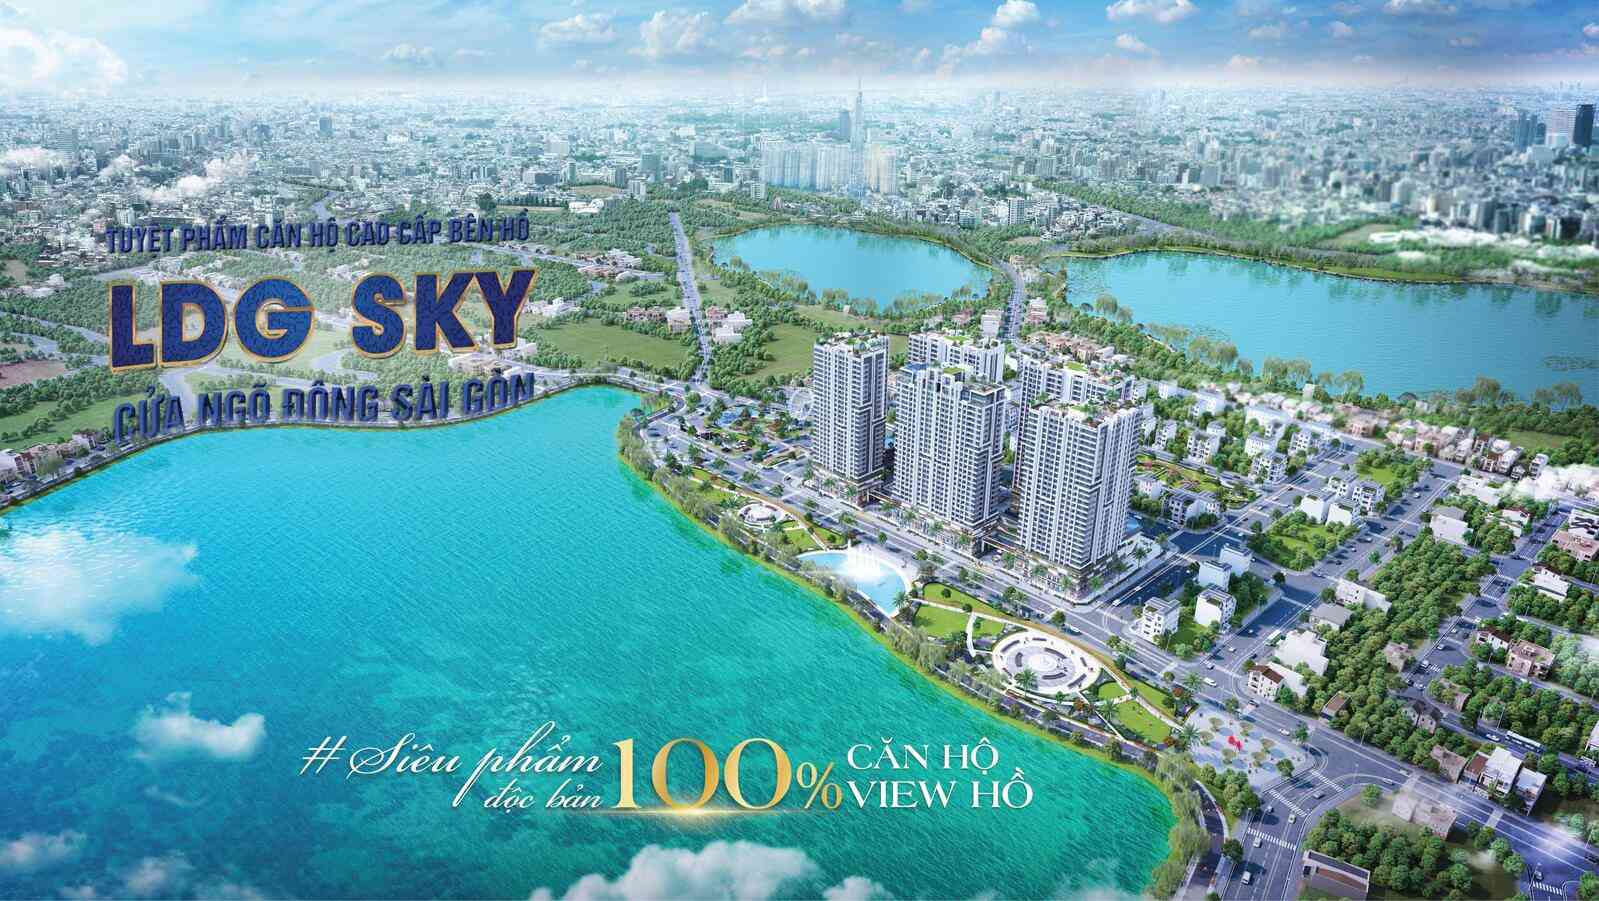 LDG Sky - Siêu phẩm độc bản 100 Căn hộ view hồ